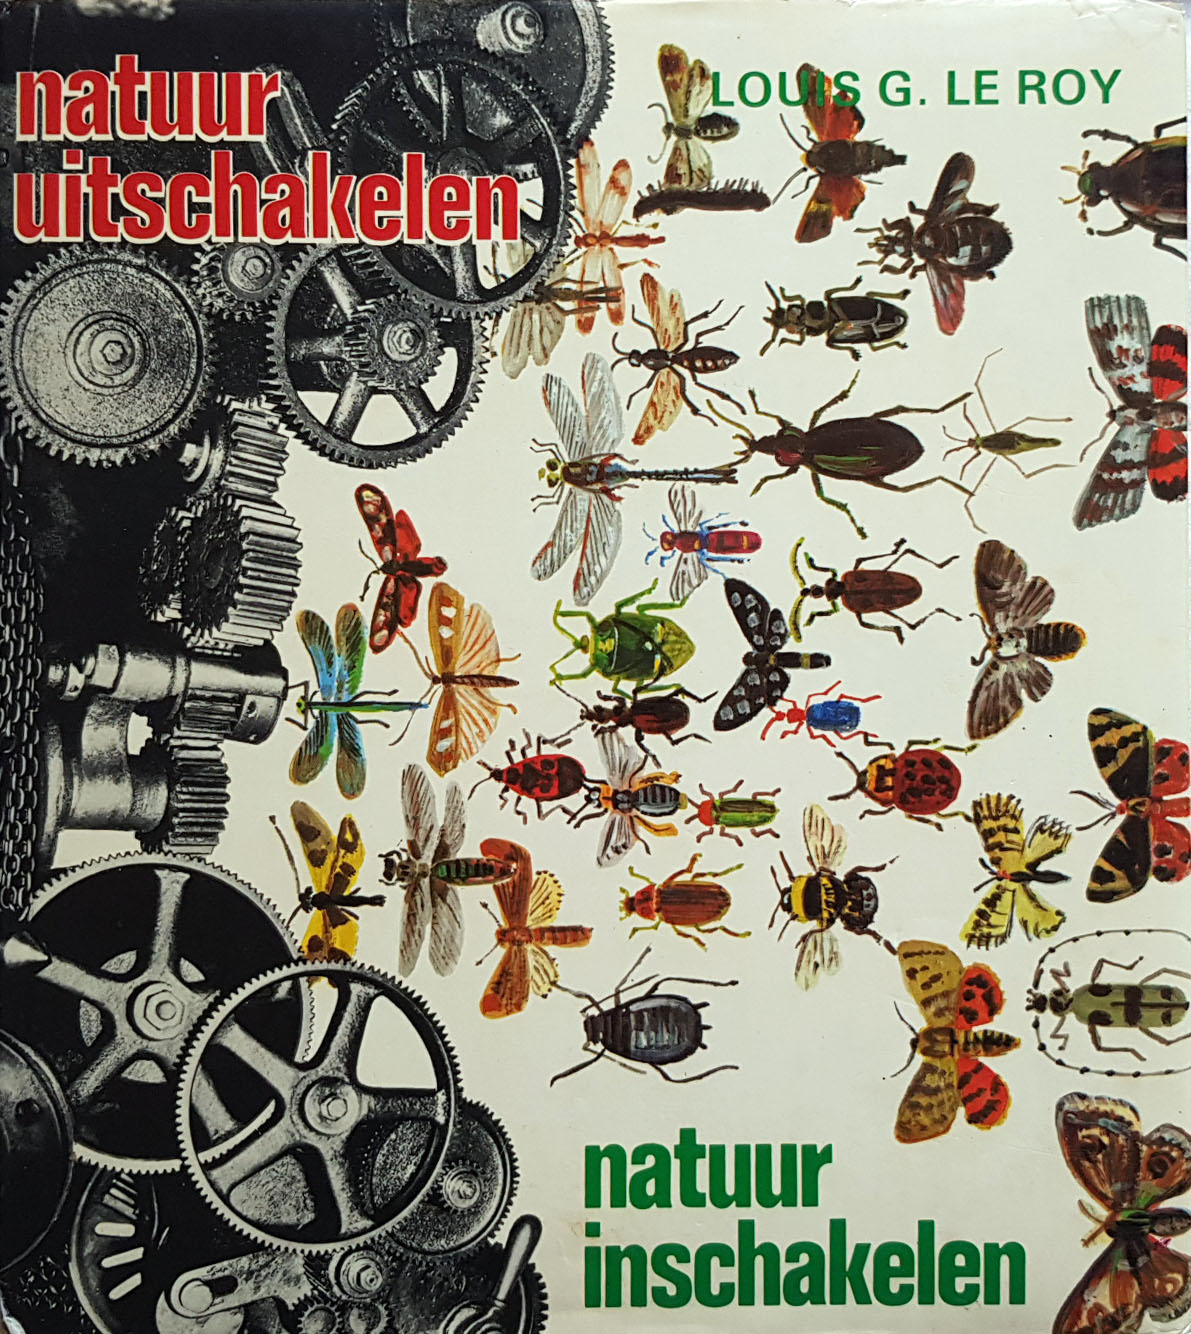 1973 natuur uitschakelen natuur inschakelen